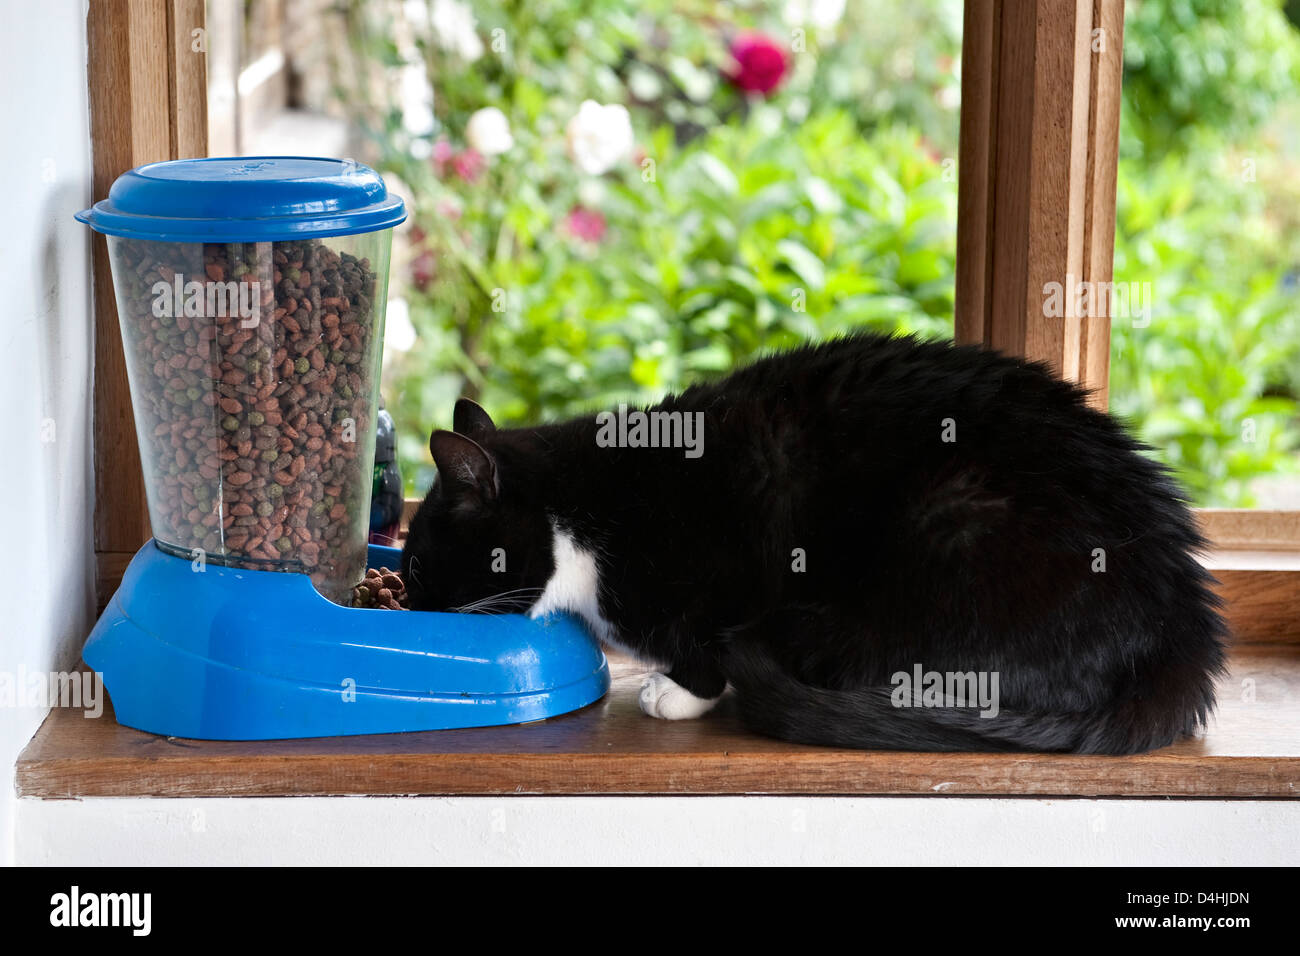 Un chat domestique mangeant de la nourriture sèche à partir d'un alimenteur automatique de chat, Royaume-Uni Banque D'Images